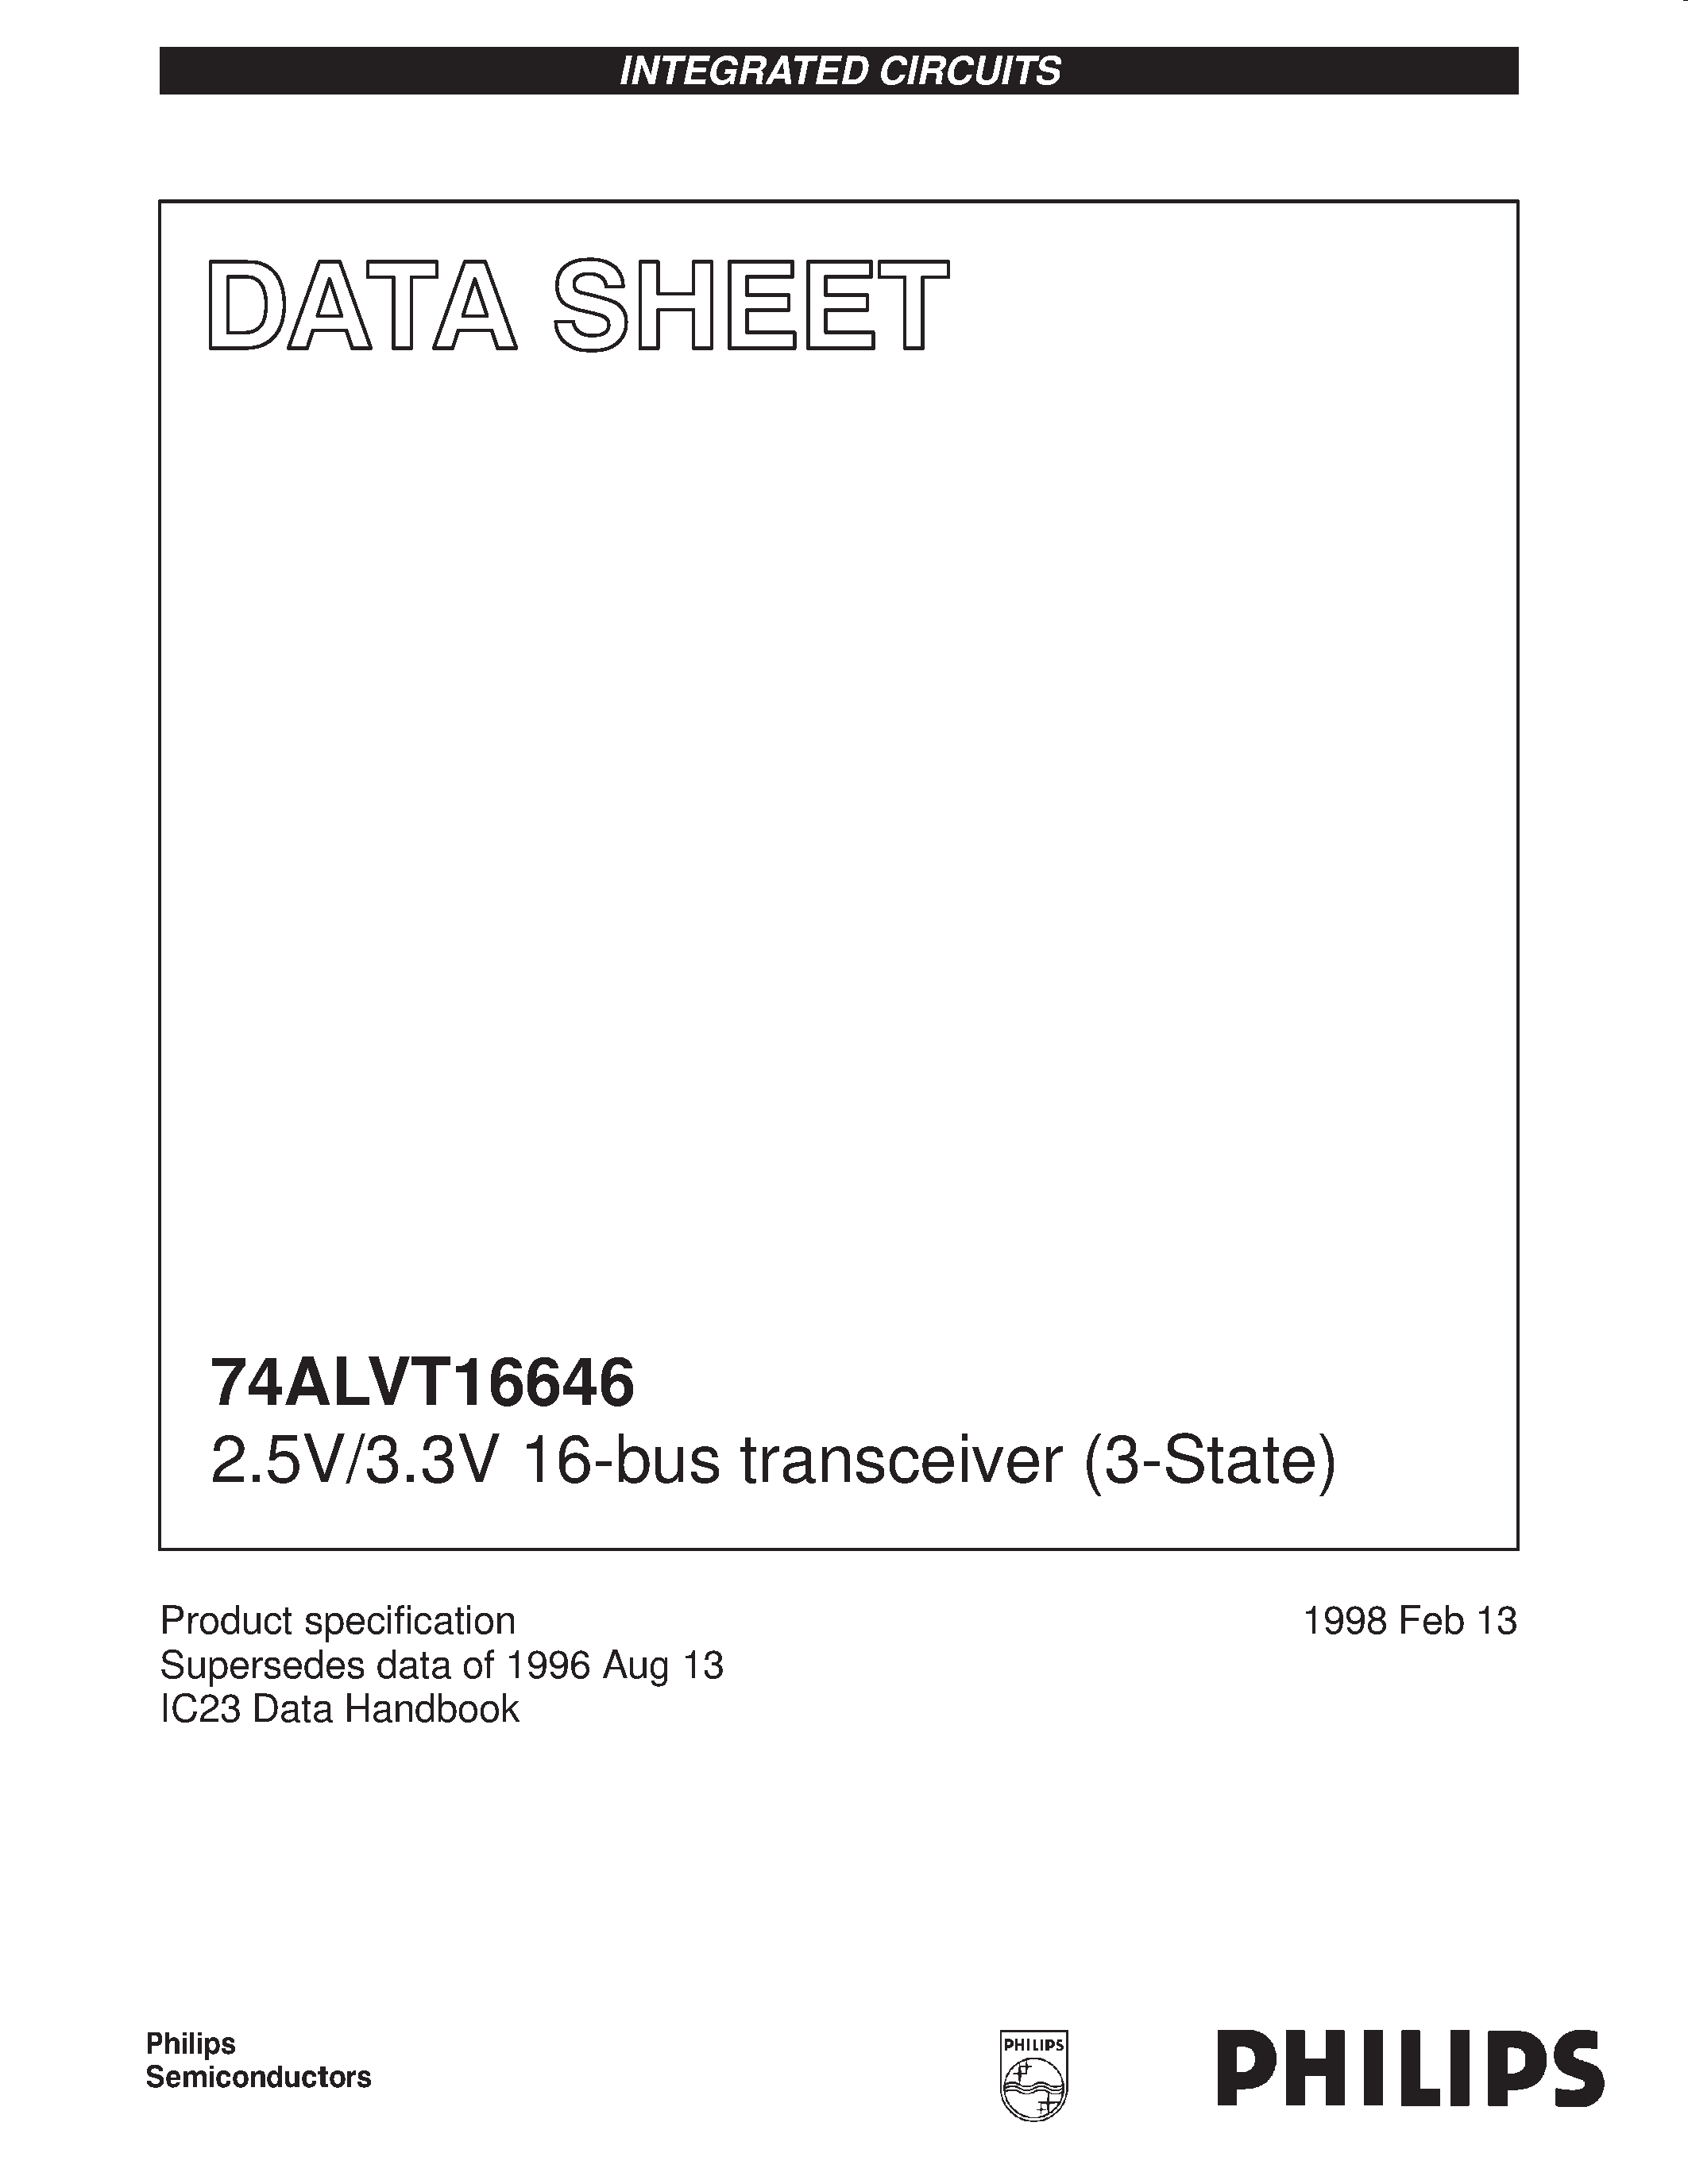 Datasheet 74ALVT166646DL - 2.5V/3.3V 16-bus transceiver 3-State page 1